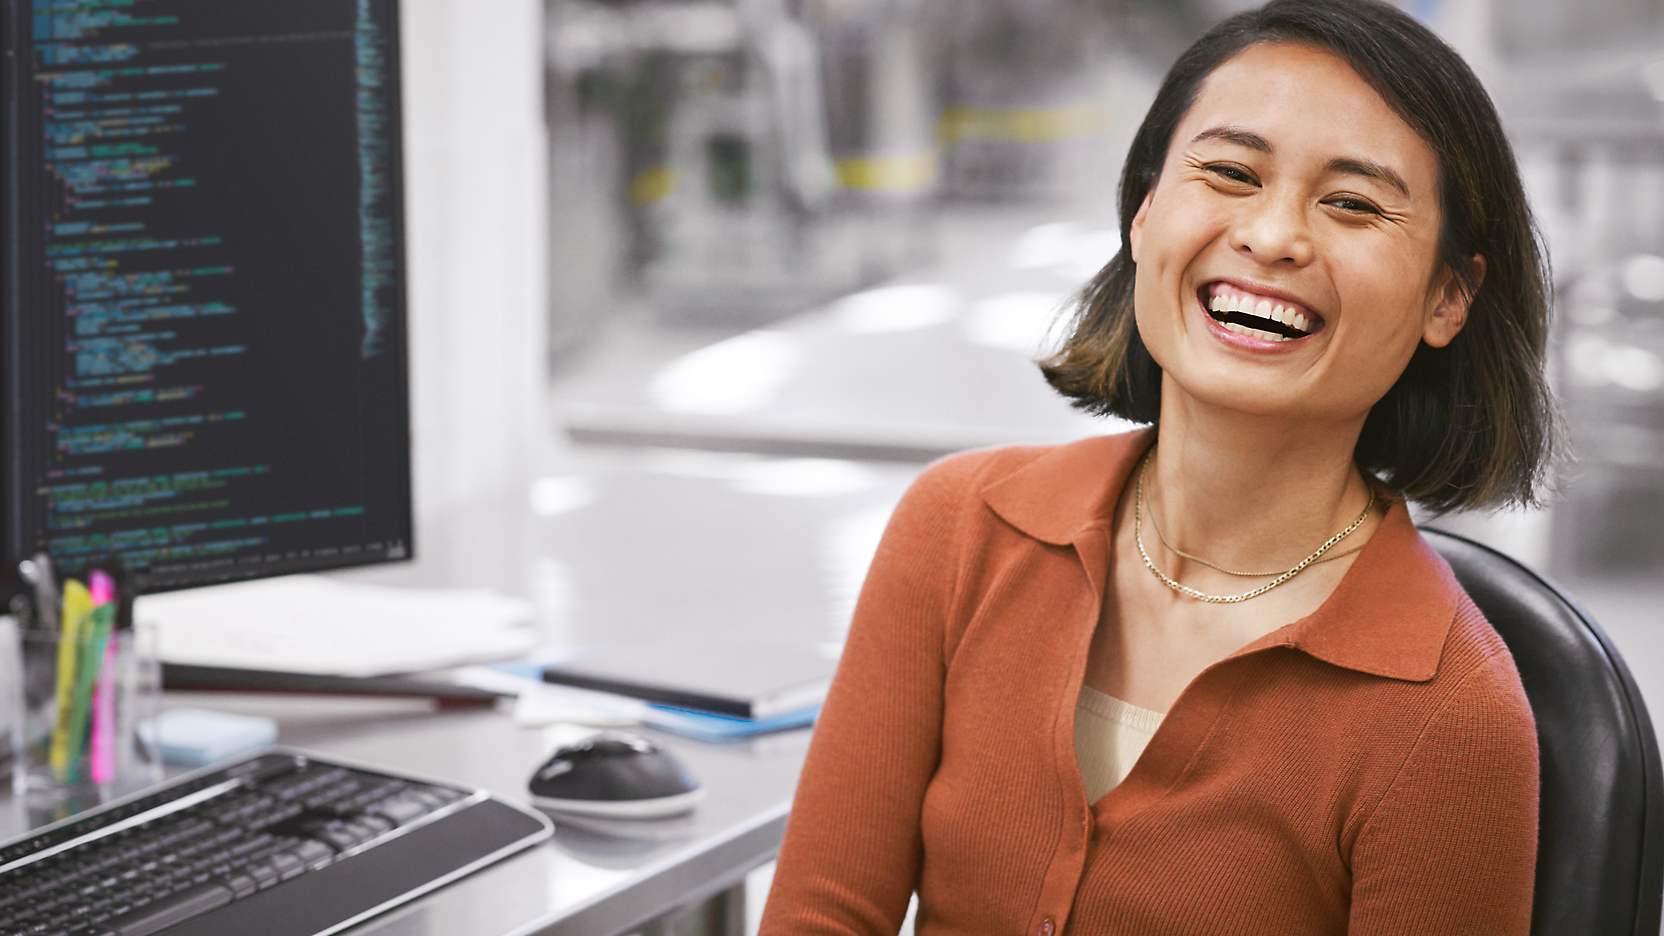 Una mujer alegre sentada en un escritorio con un ordenador, mostrando un código en la pantalla, en una oficina moderna.